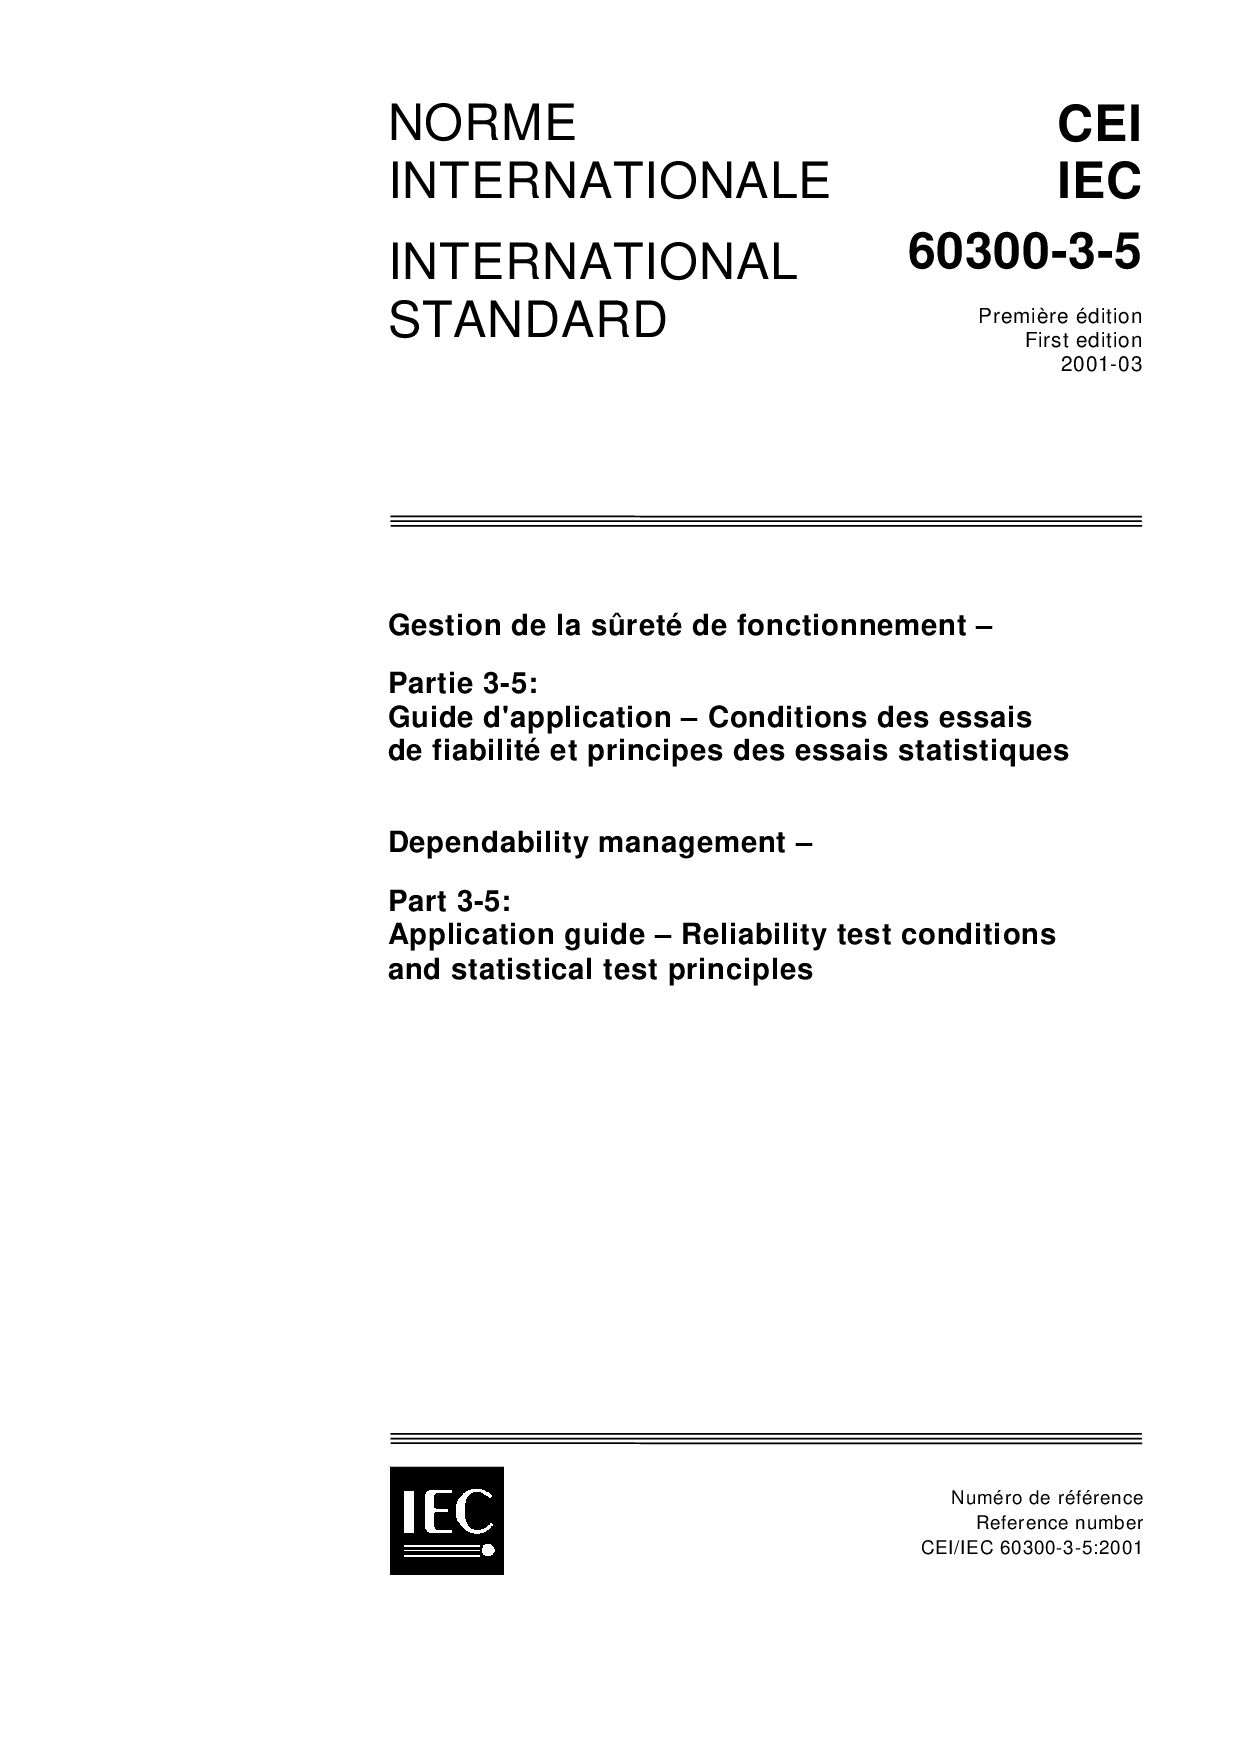 IEC 60300-3-5:2001